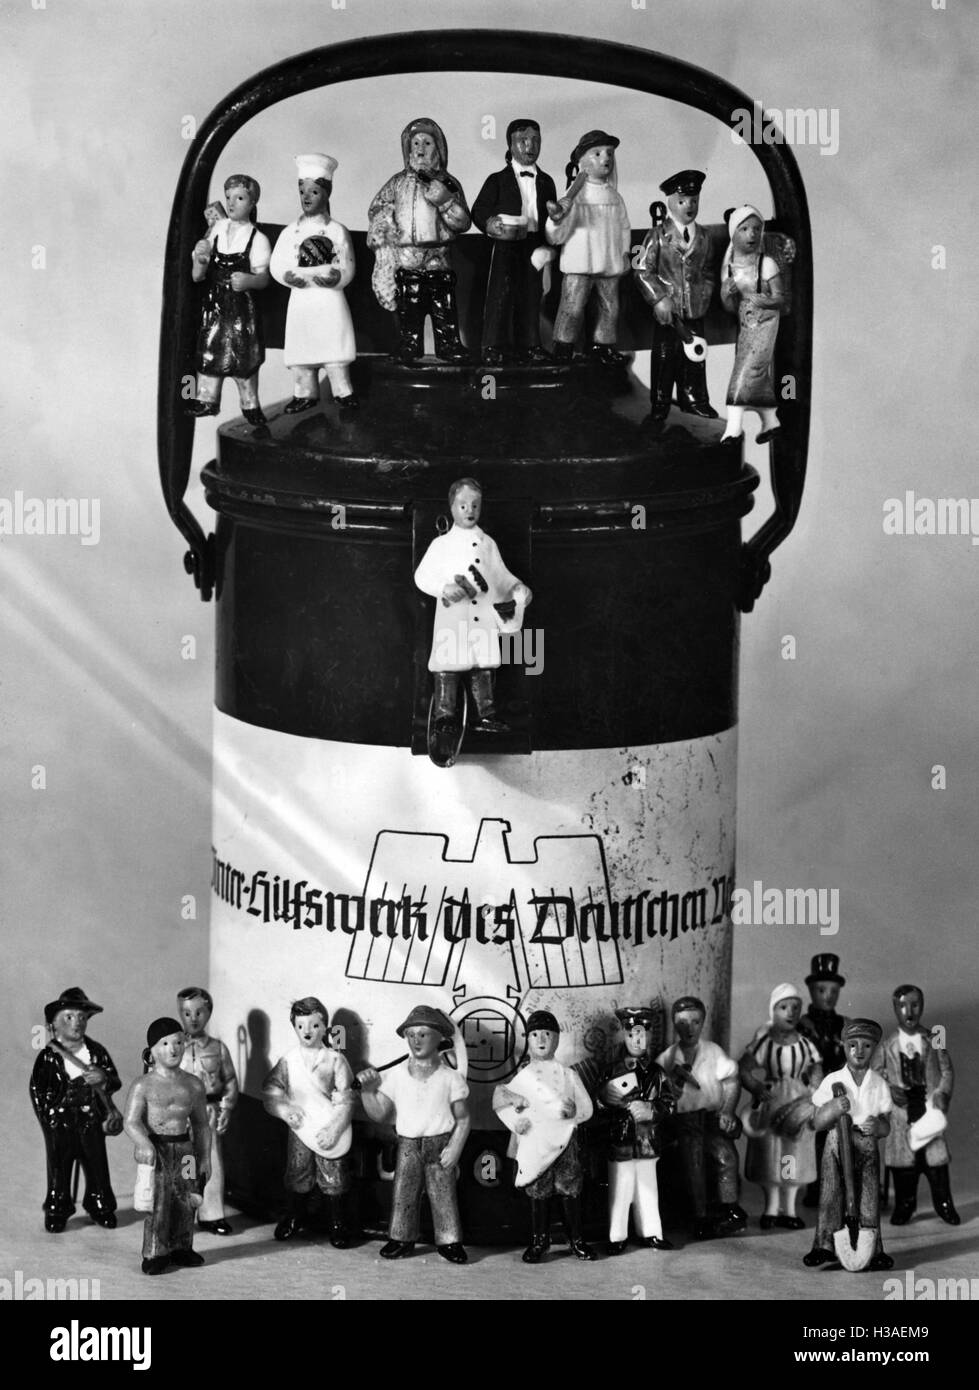 "Porzellanfiguren '' Schaffendes Deutschland'' (produktive Germany), 1939" Stockfoto